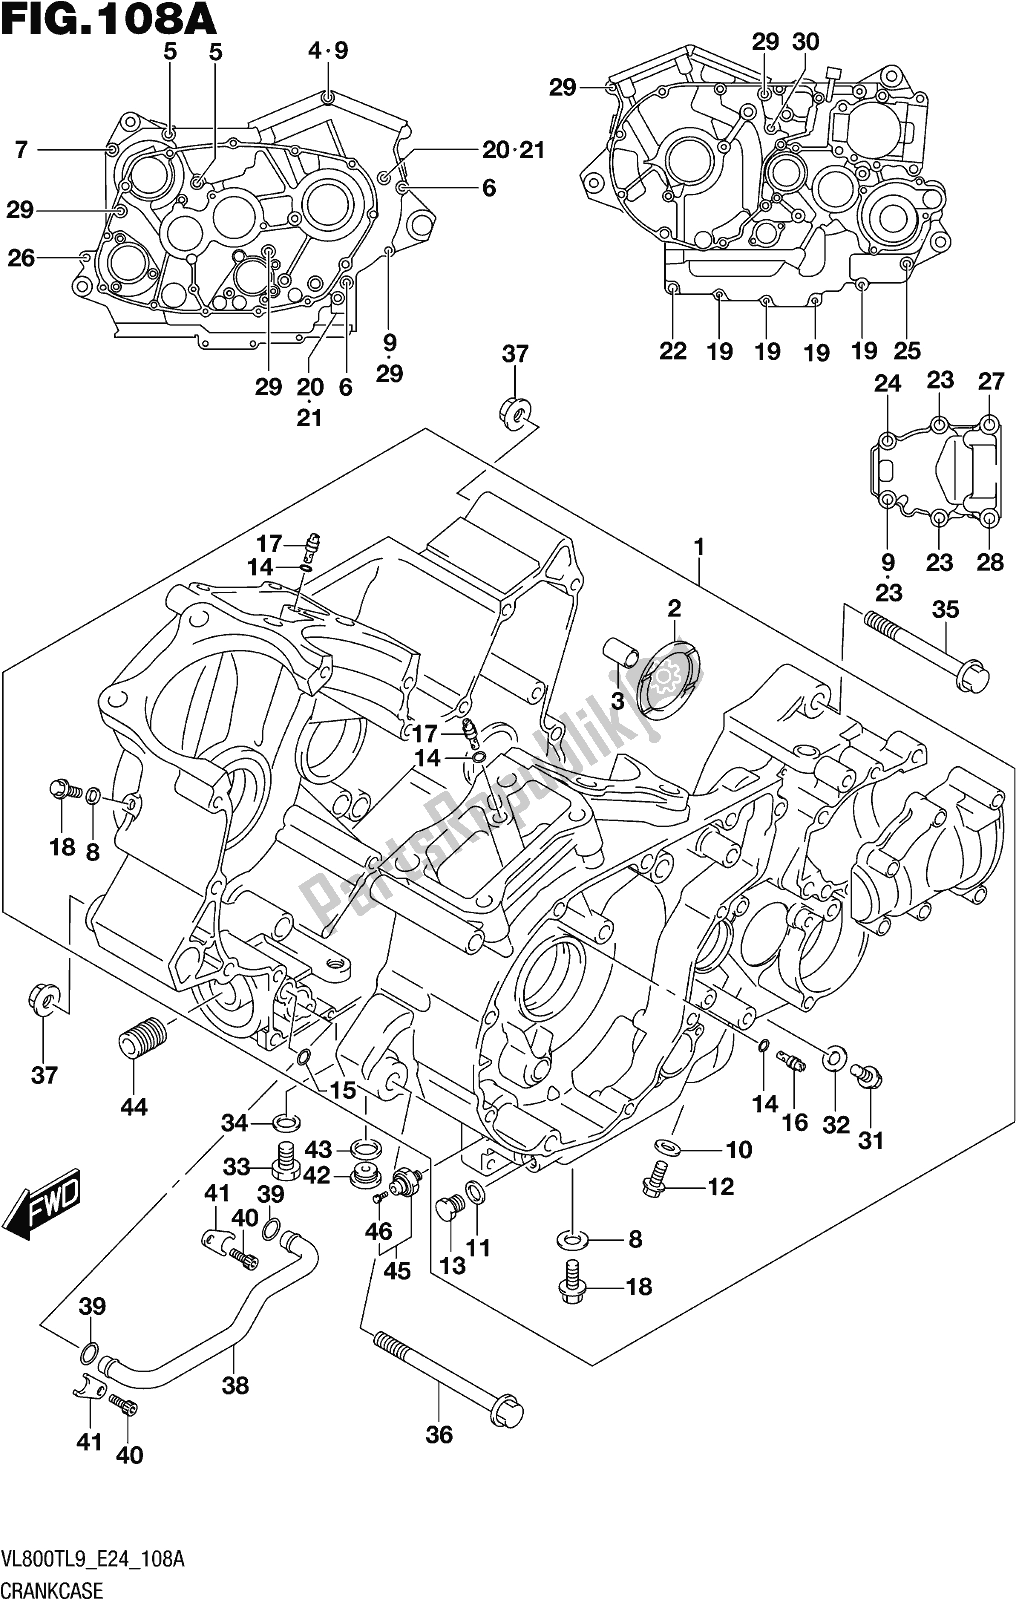 Toutes les pièces pour le Fig. 108a Crankcase du Suzuki VL 800T 2019